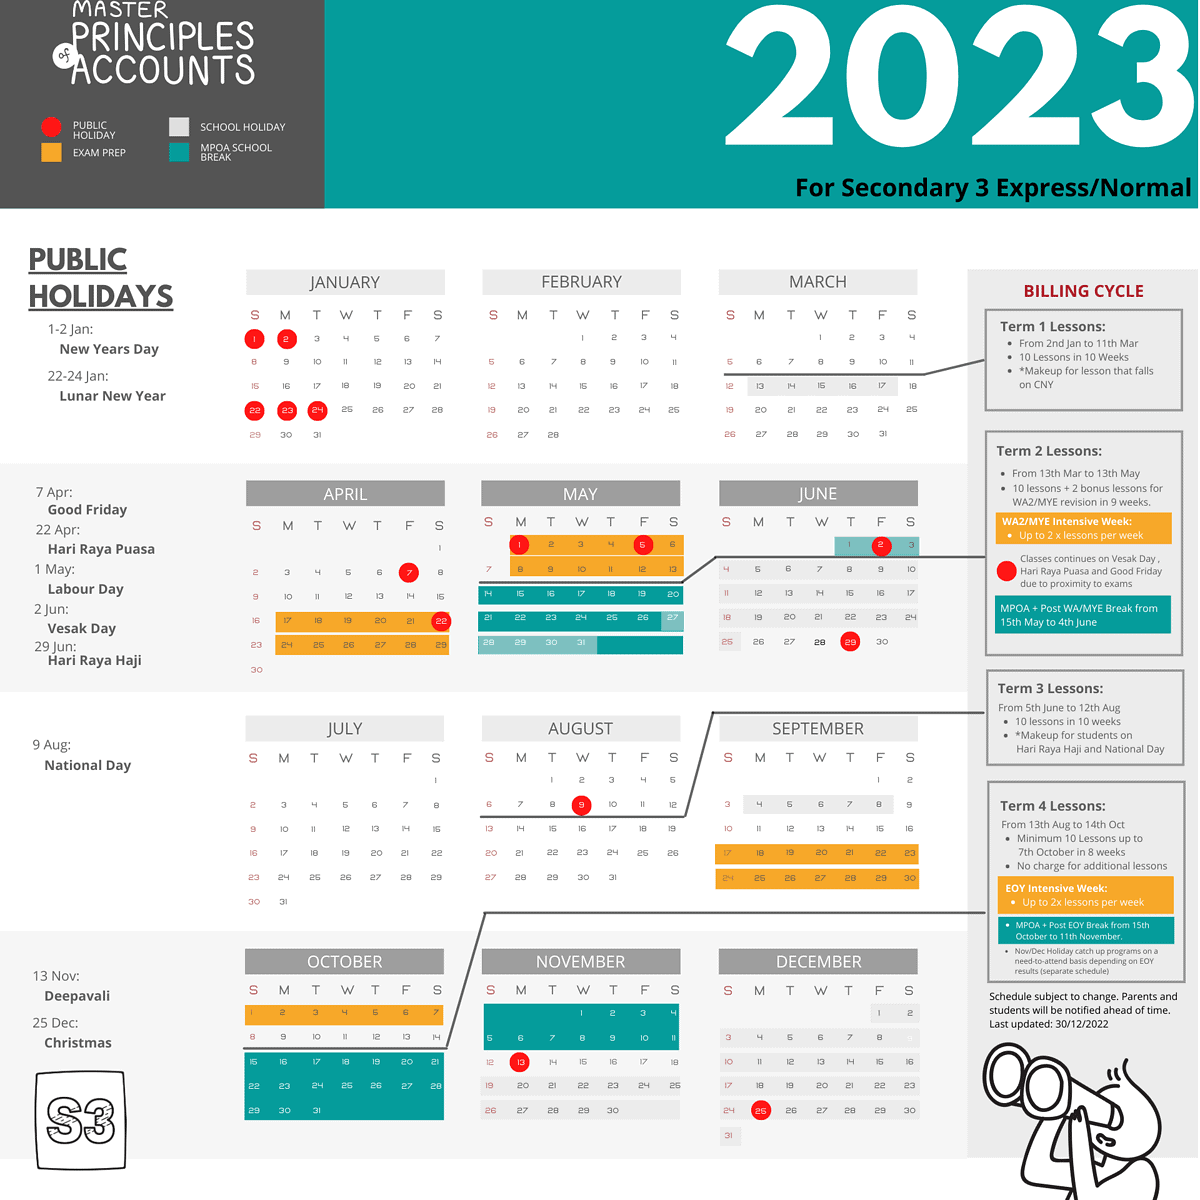 MPOA 2023 Calendar Sec 3